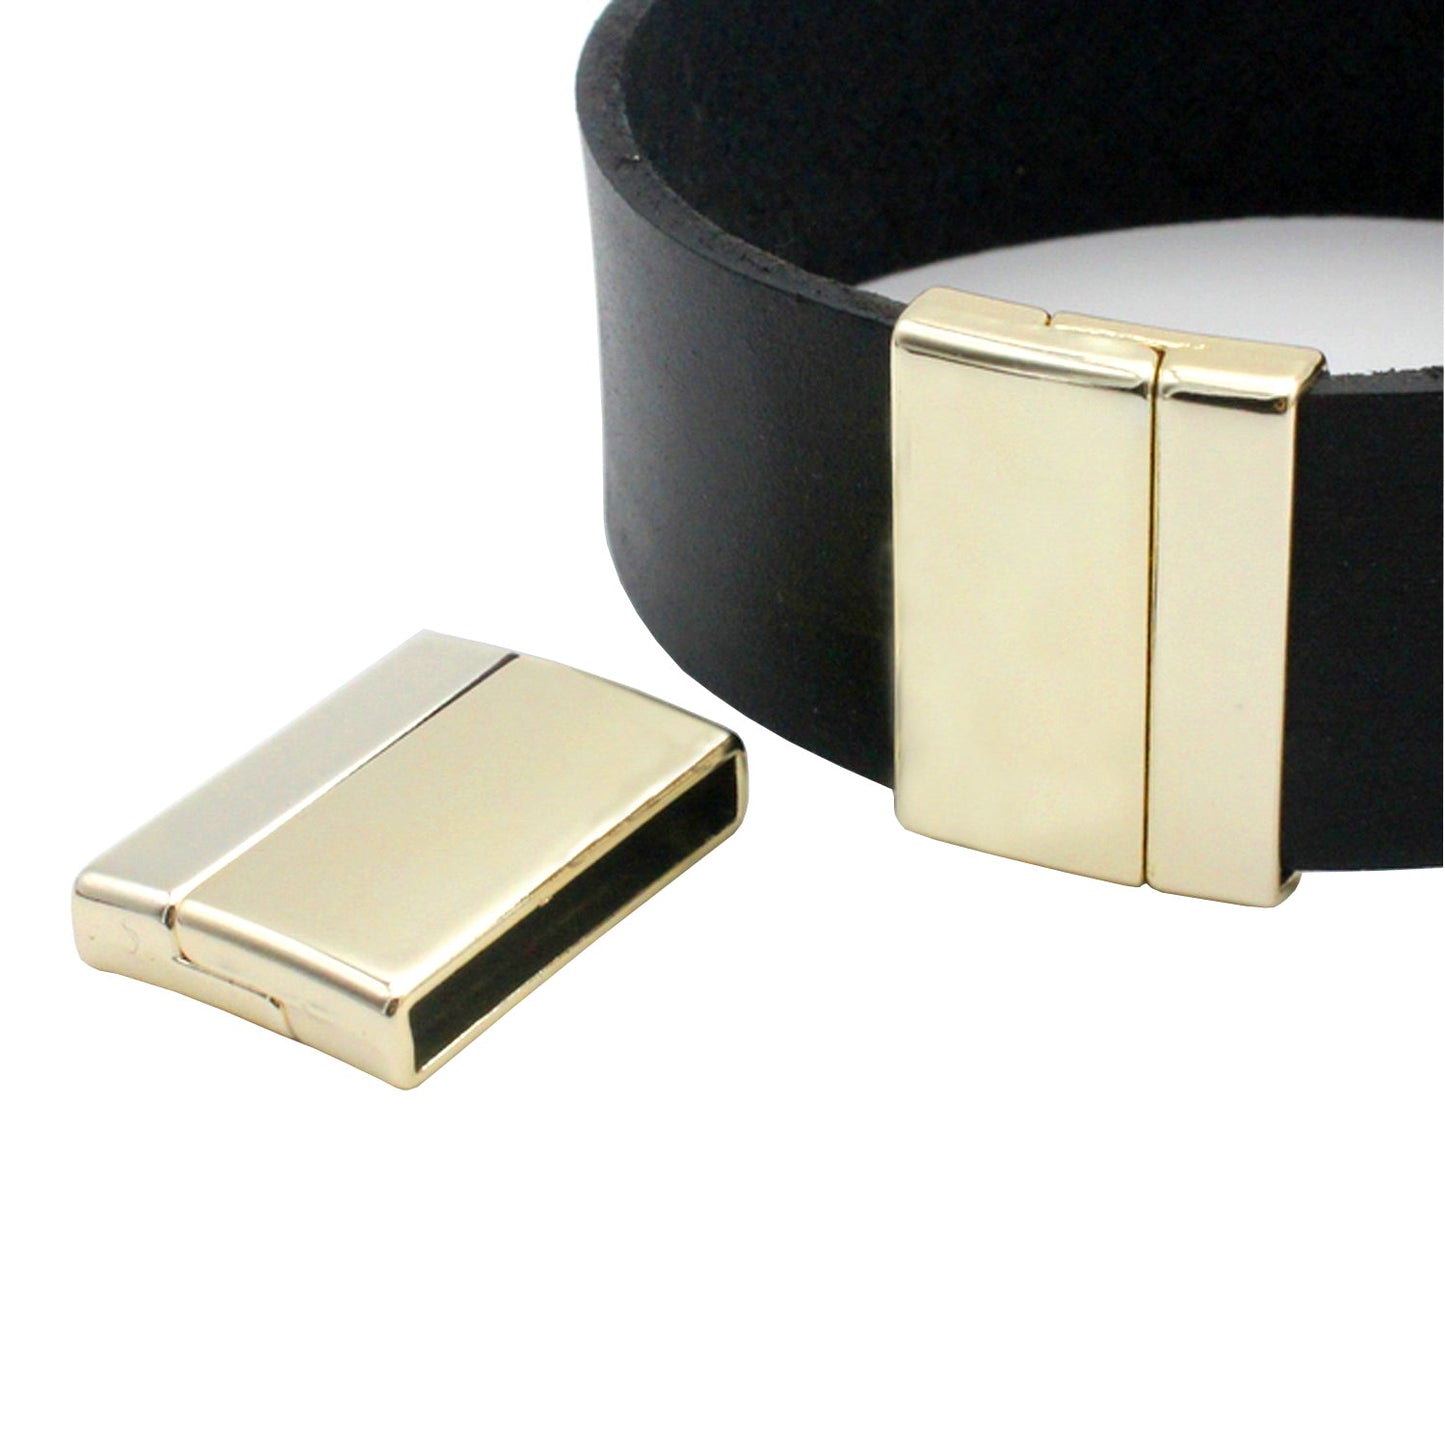 25 mm x 3 mm Innenloch-Magnetverschlüsse und Verschluss für die Herstellung von Armbändern, flaches Lederbandende, Silber/Gold